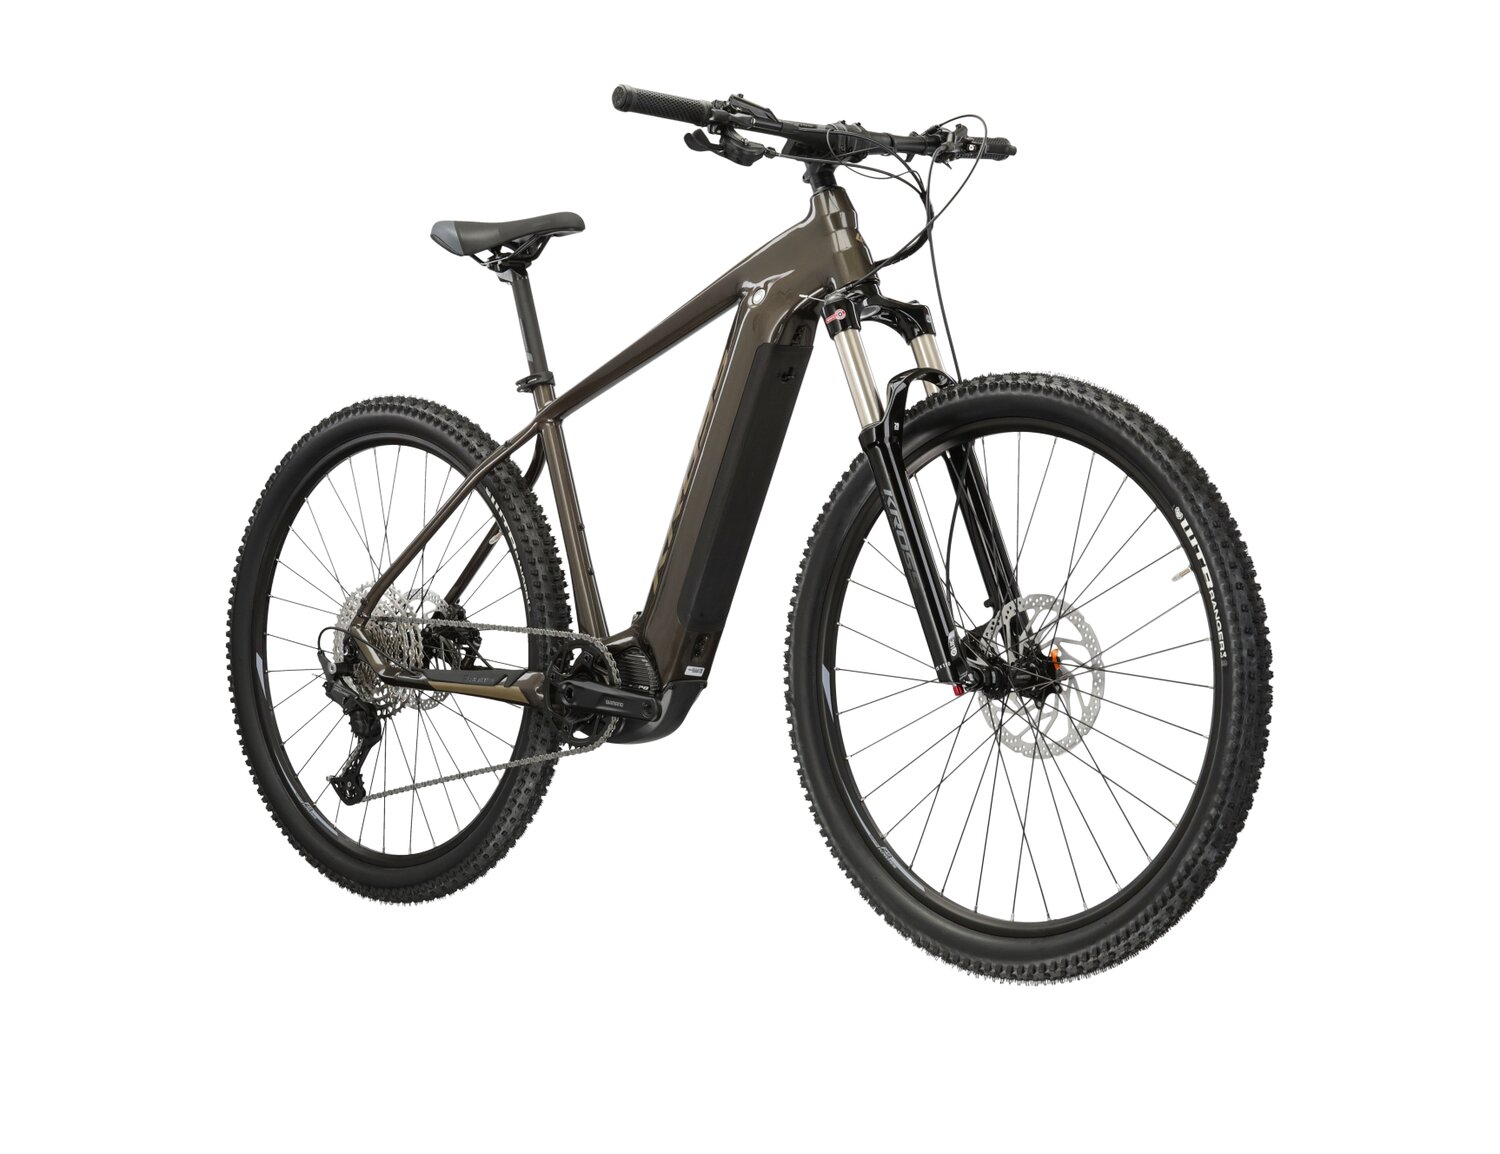  Elektryczny rower górski Ebike MTB XC KROSS Level Boost 2.0 500 Wh na aluminiowej ramie w kolorze brązowym wyposażony w osprzęt Shimano i napęd elektryczny Shimano 